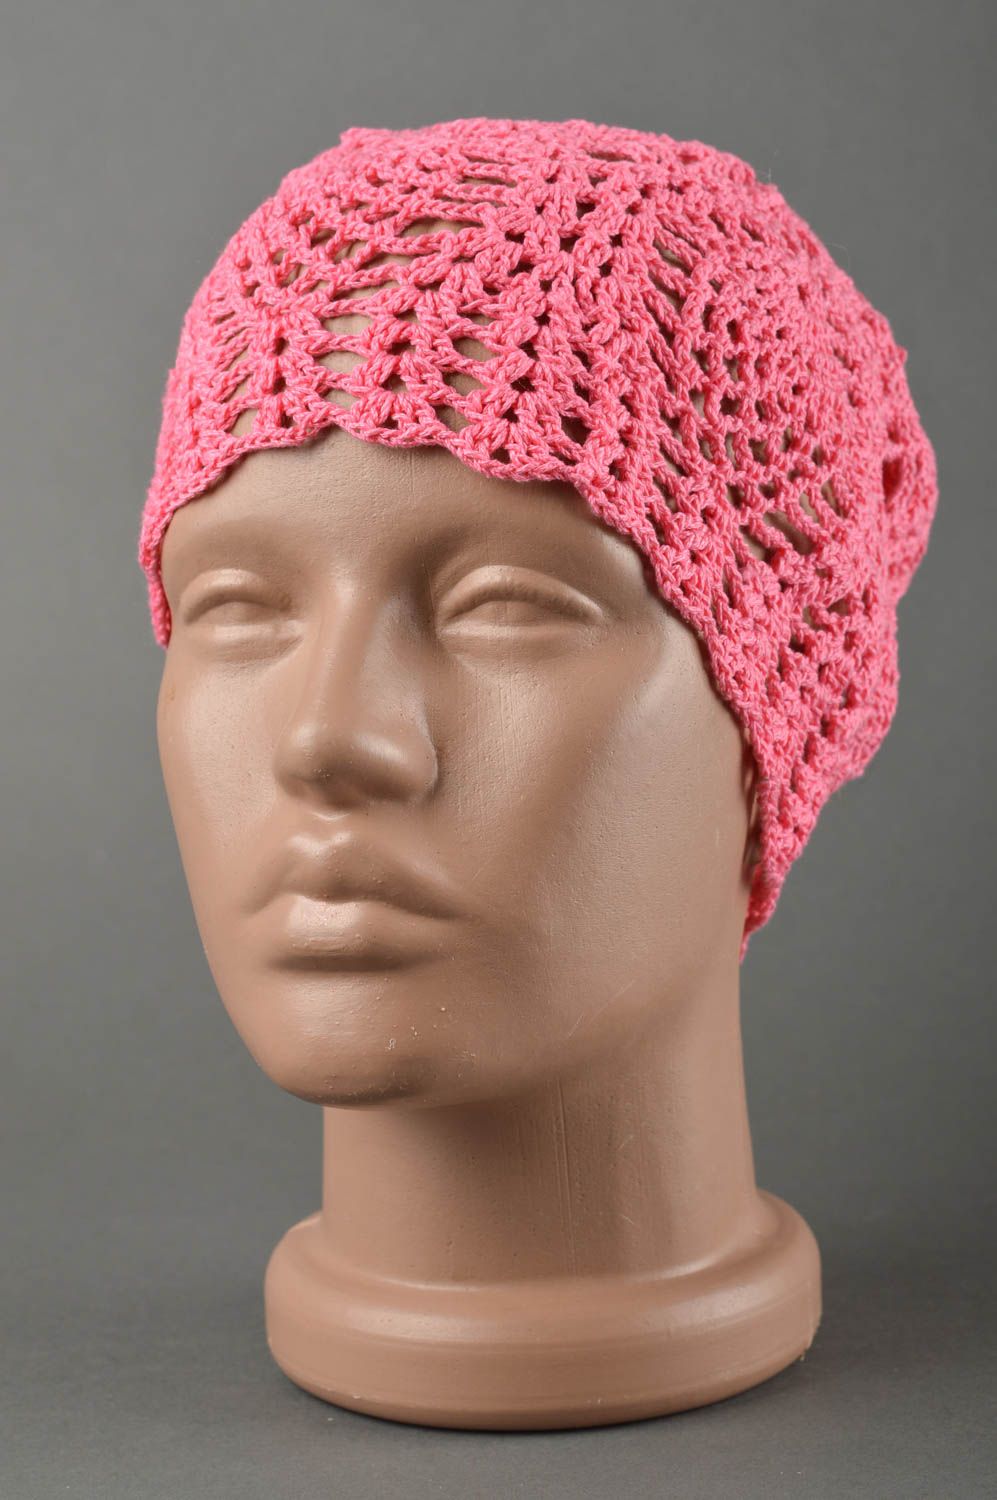 Вязаная шапка для детей хэндмэйд шапочка на девочку весенняя шапка розовая фото 1